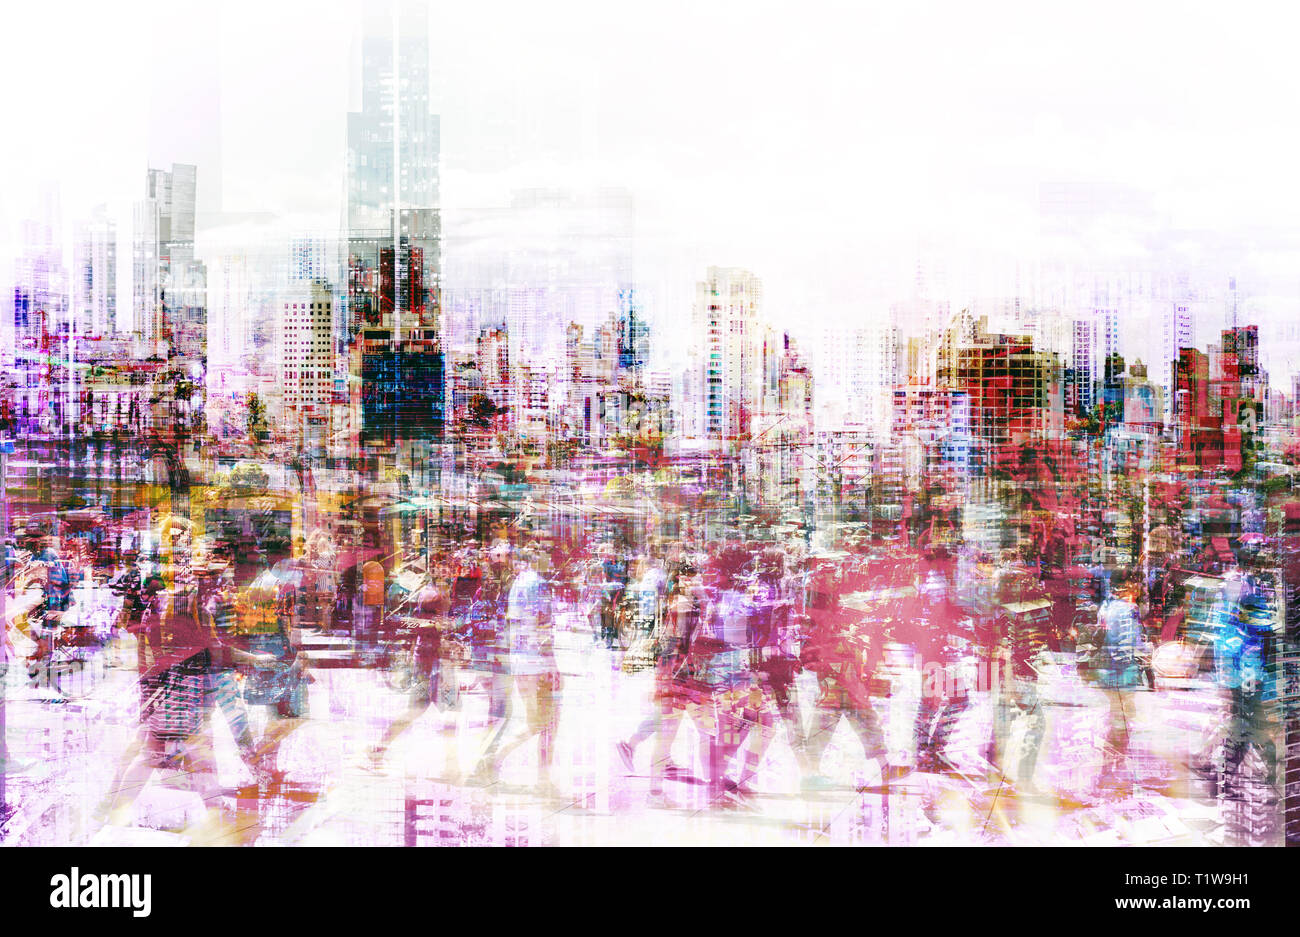 Masse der anonymen Menschen zu Fuß auf der belebten Straße der Stadt - Abstract city life Konzept Stockfoto